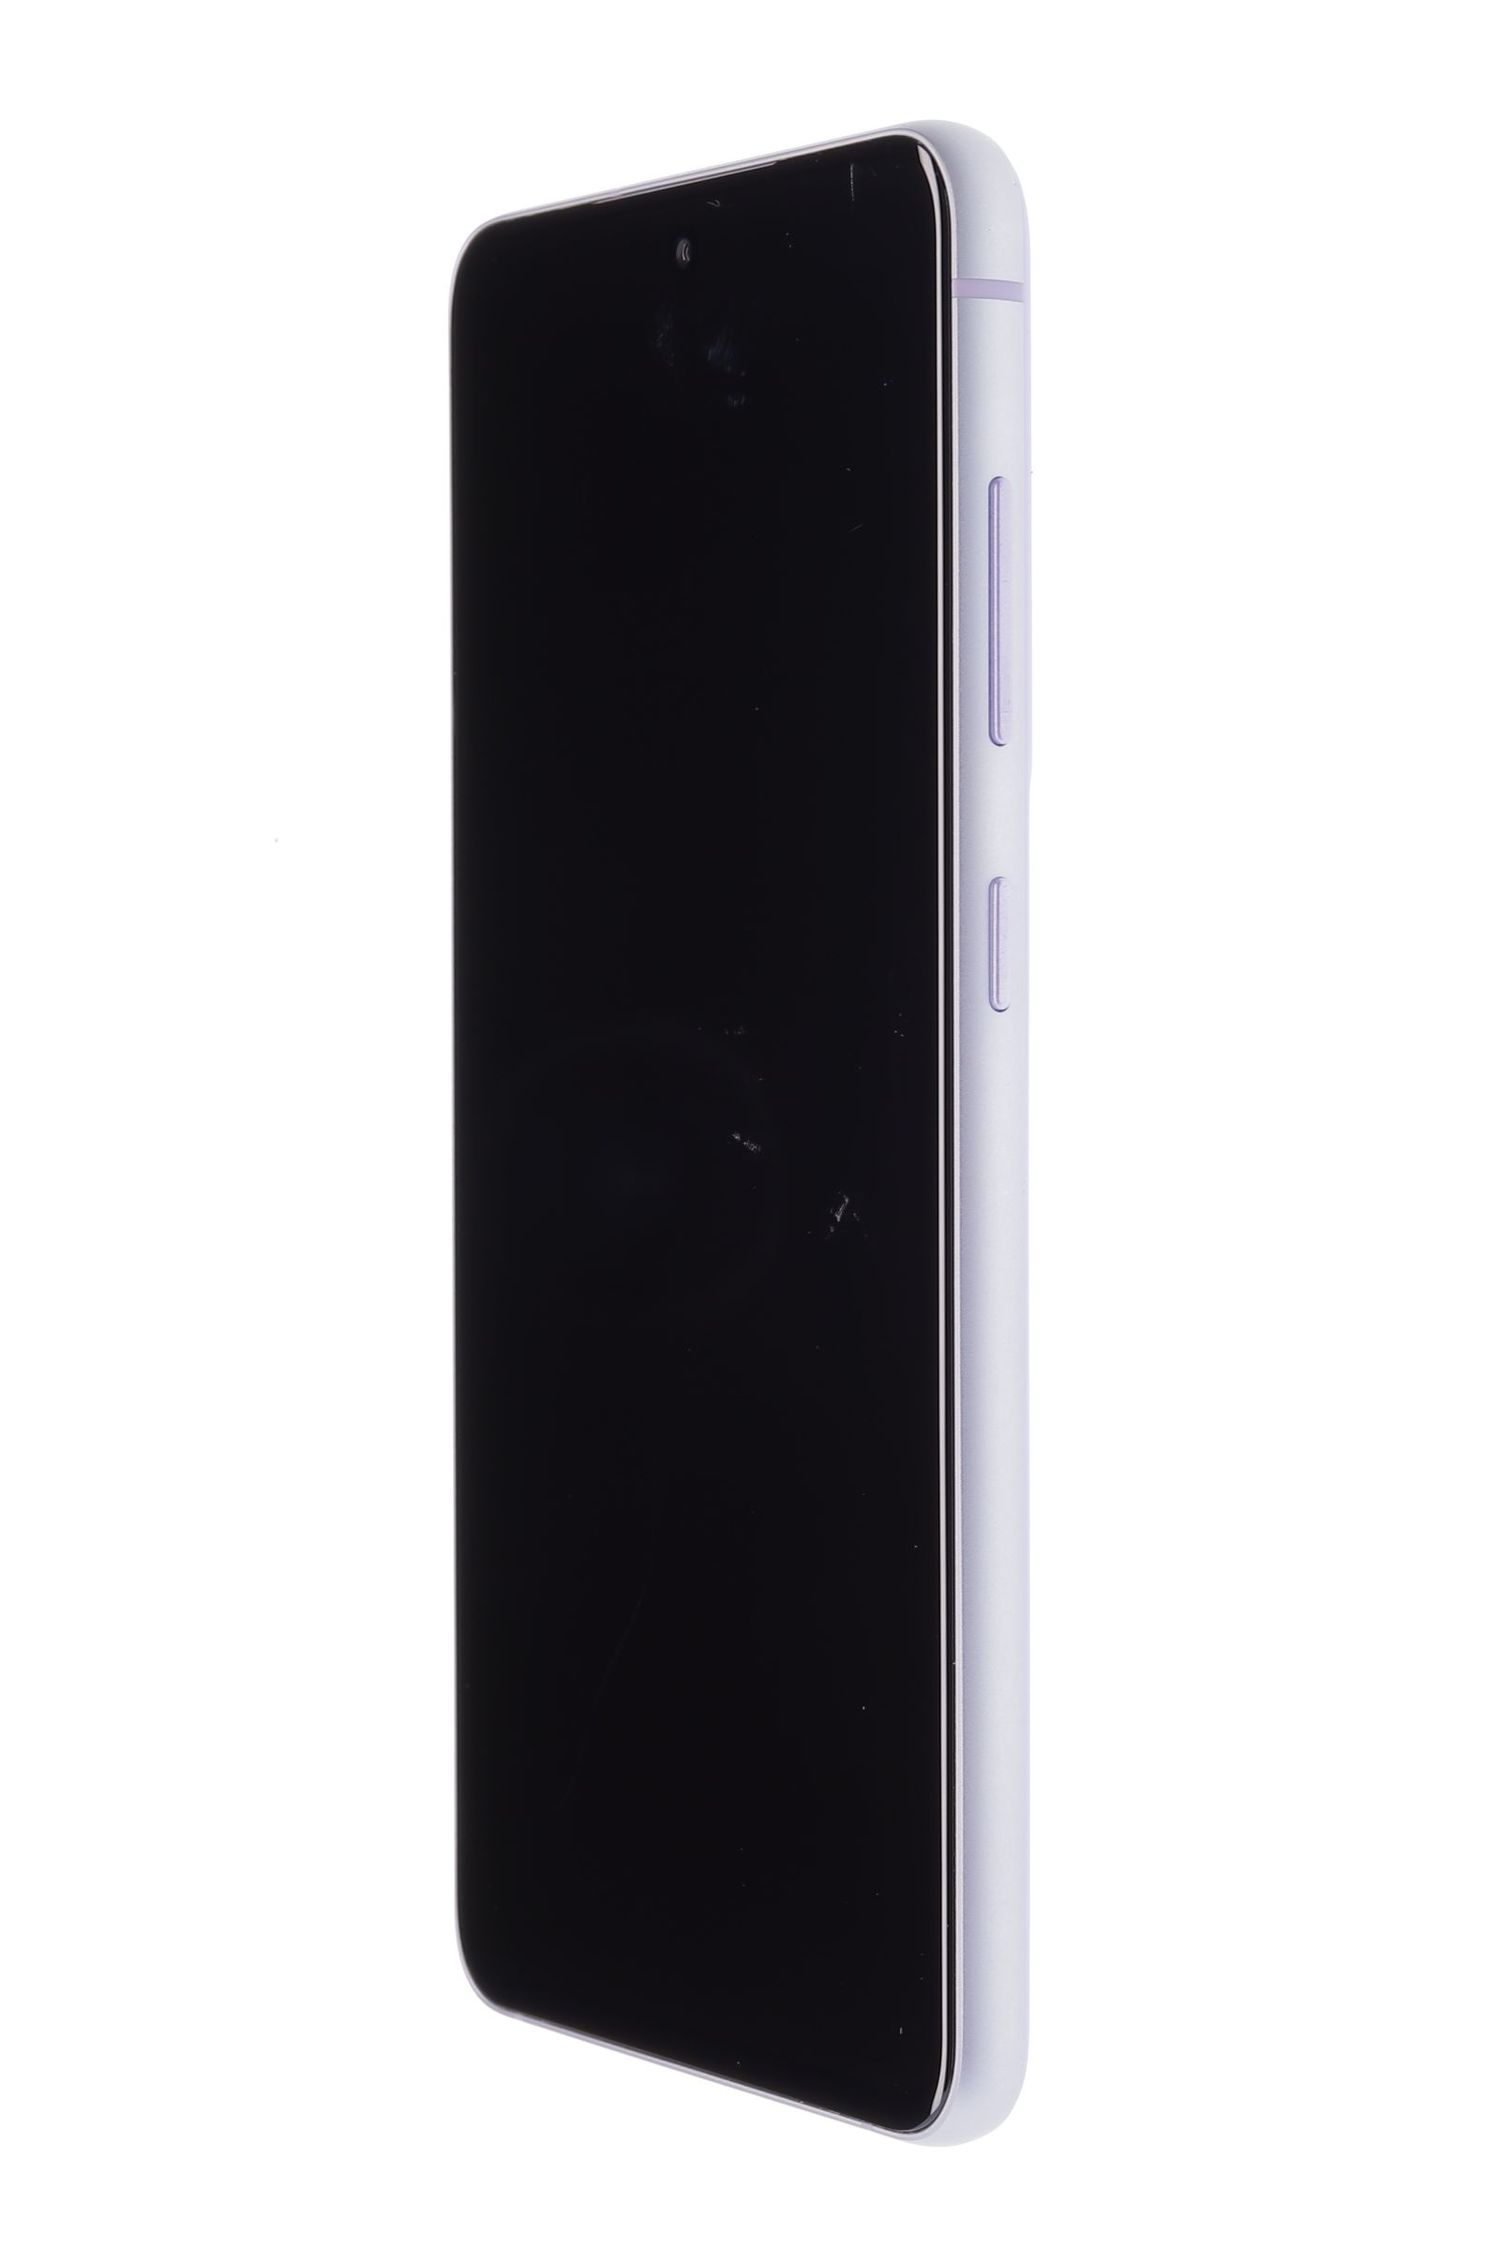 Telefon mobil Samsung Galaxy S21 FE 5G Dual Sim, Lavender, 128 GB, Foarte Bun